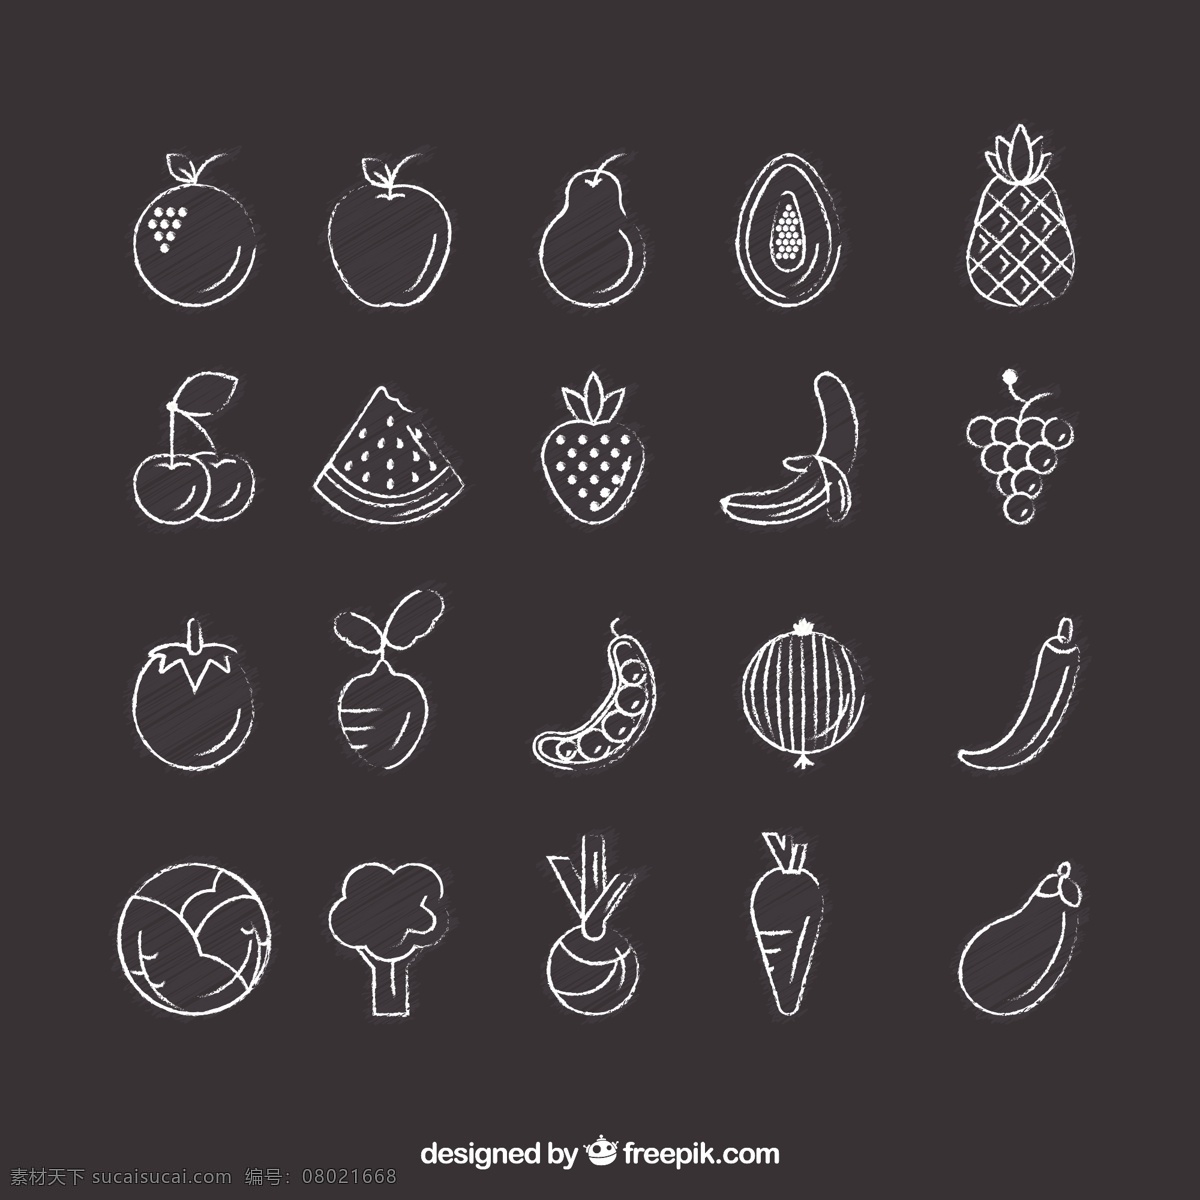 手绘蔬菜图标 食品 图标 手 自然 黑板 卫生 水果 手绘 苹果 绘图 香蕉 健康 蔬菜 食品的图标 葡萄 菠萝 樱桃 健康食品 灰色